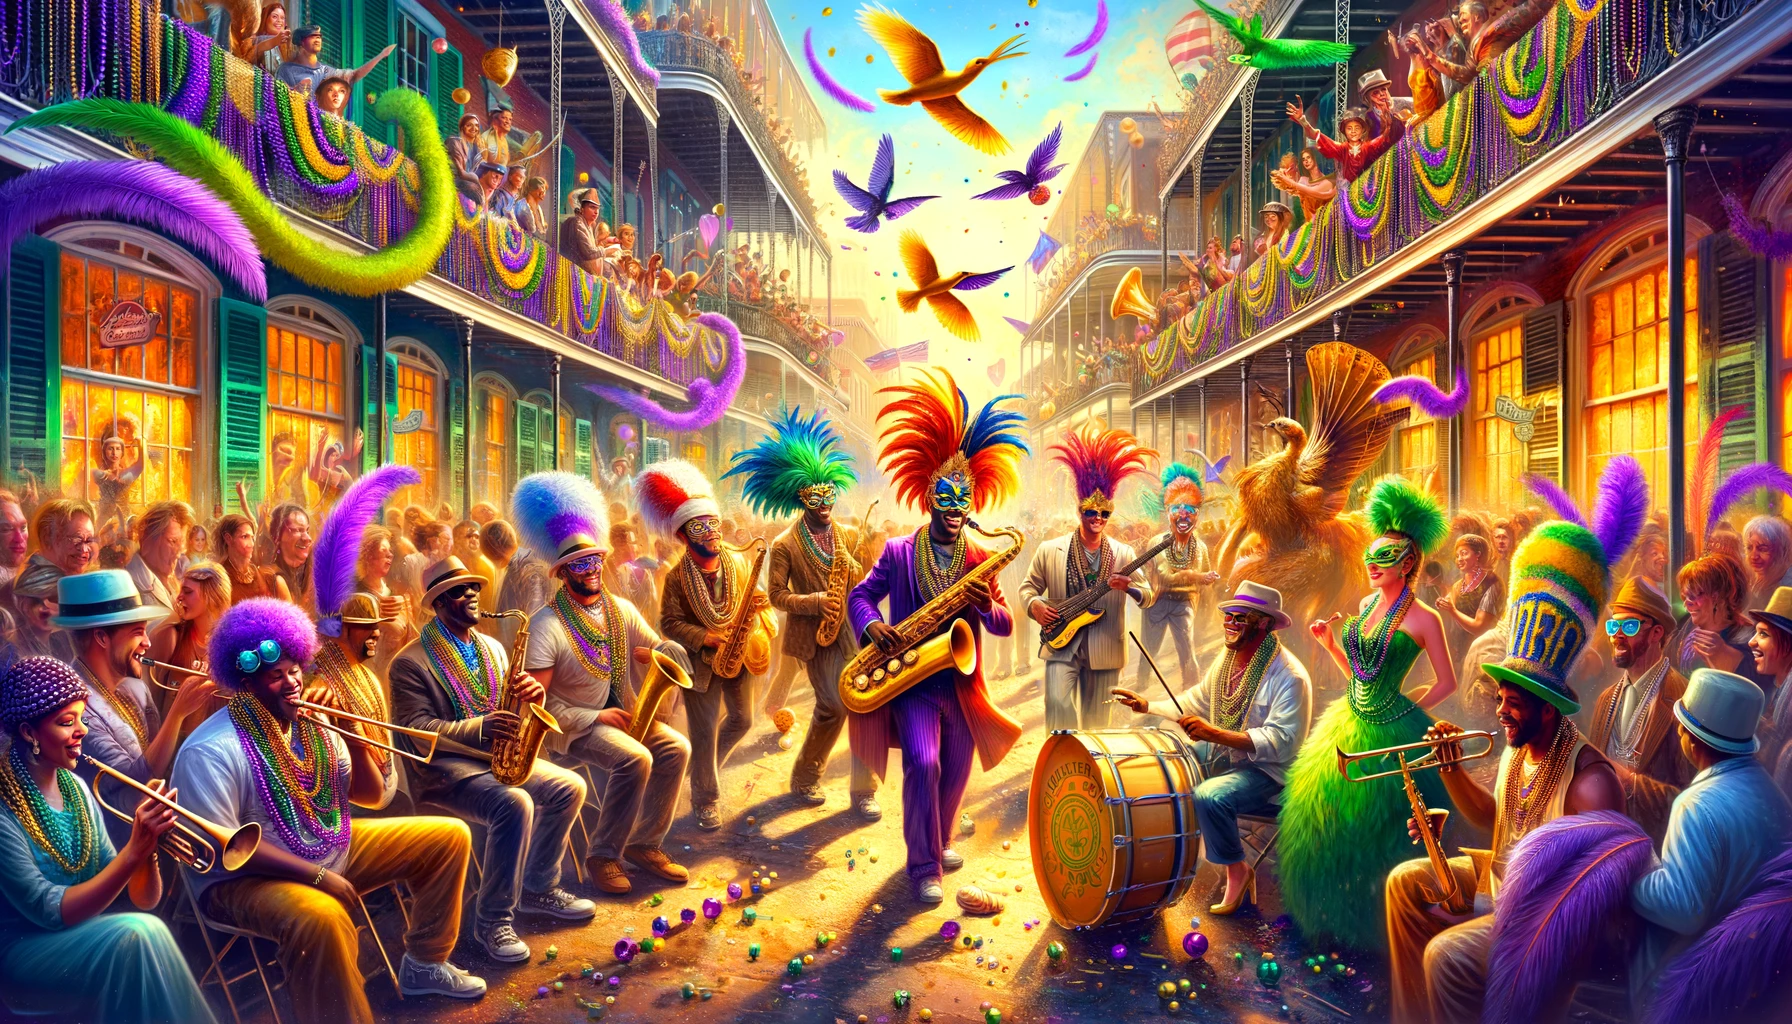 Kolorowa parada Mardi Gras na ulicach Nowego Orleanu z muzykami jazzowymi i tłumem w kostiumach